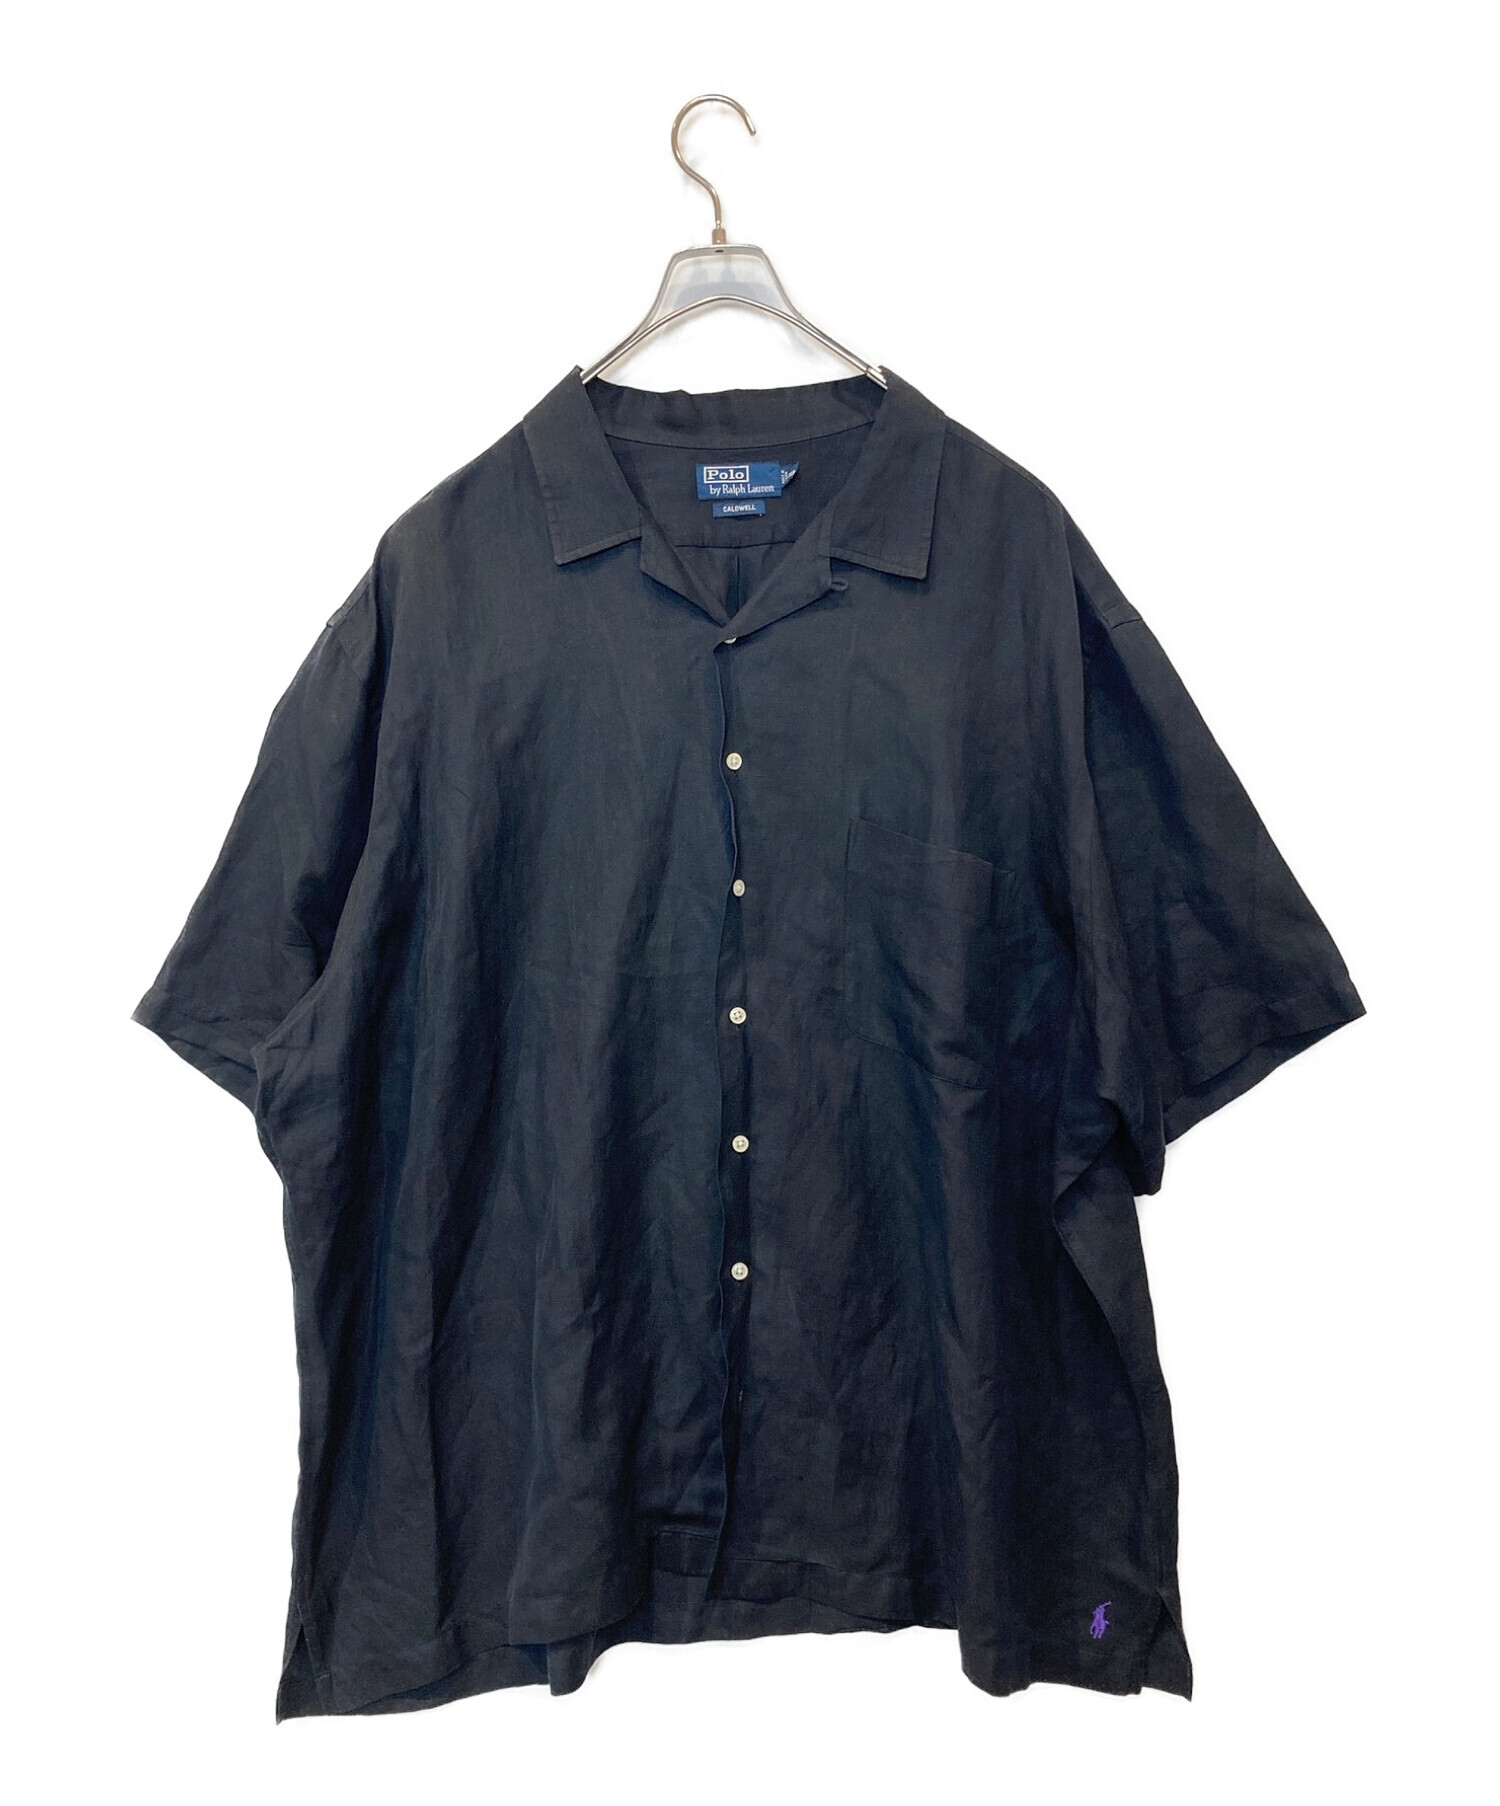 POLO RALPH LAUREN (ポロ・ラルフローレン) 【古着】裾ポニーオープンカラーシャツ ブラック サイズ:3XB